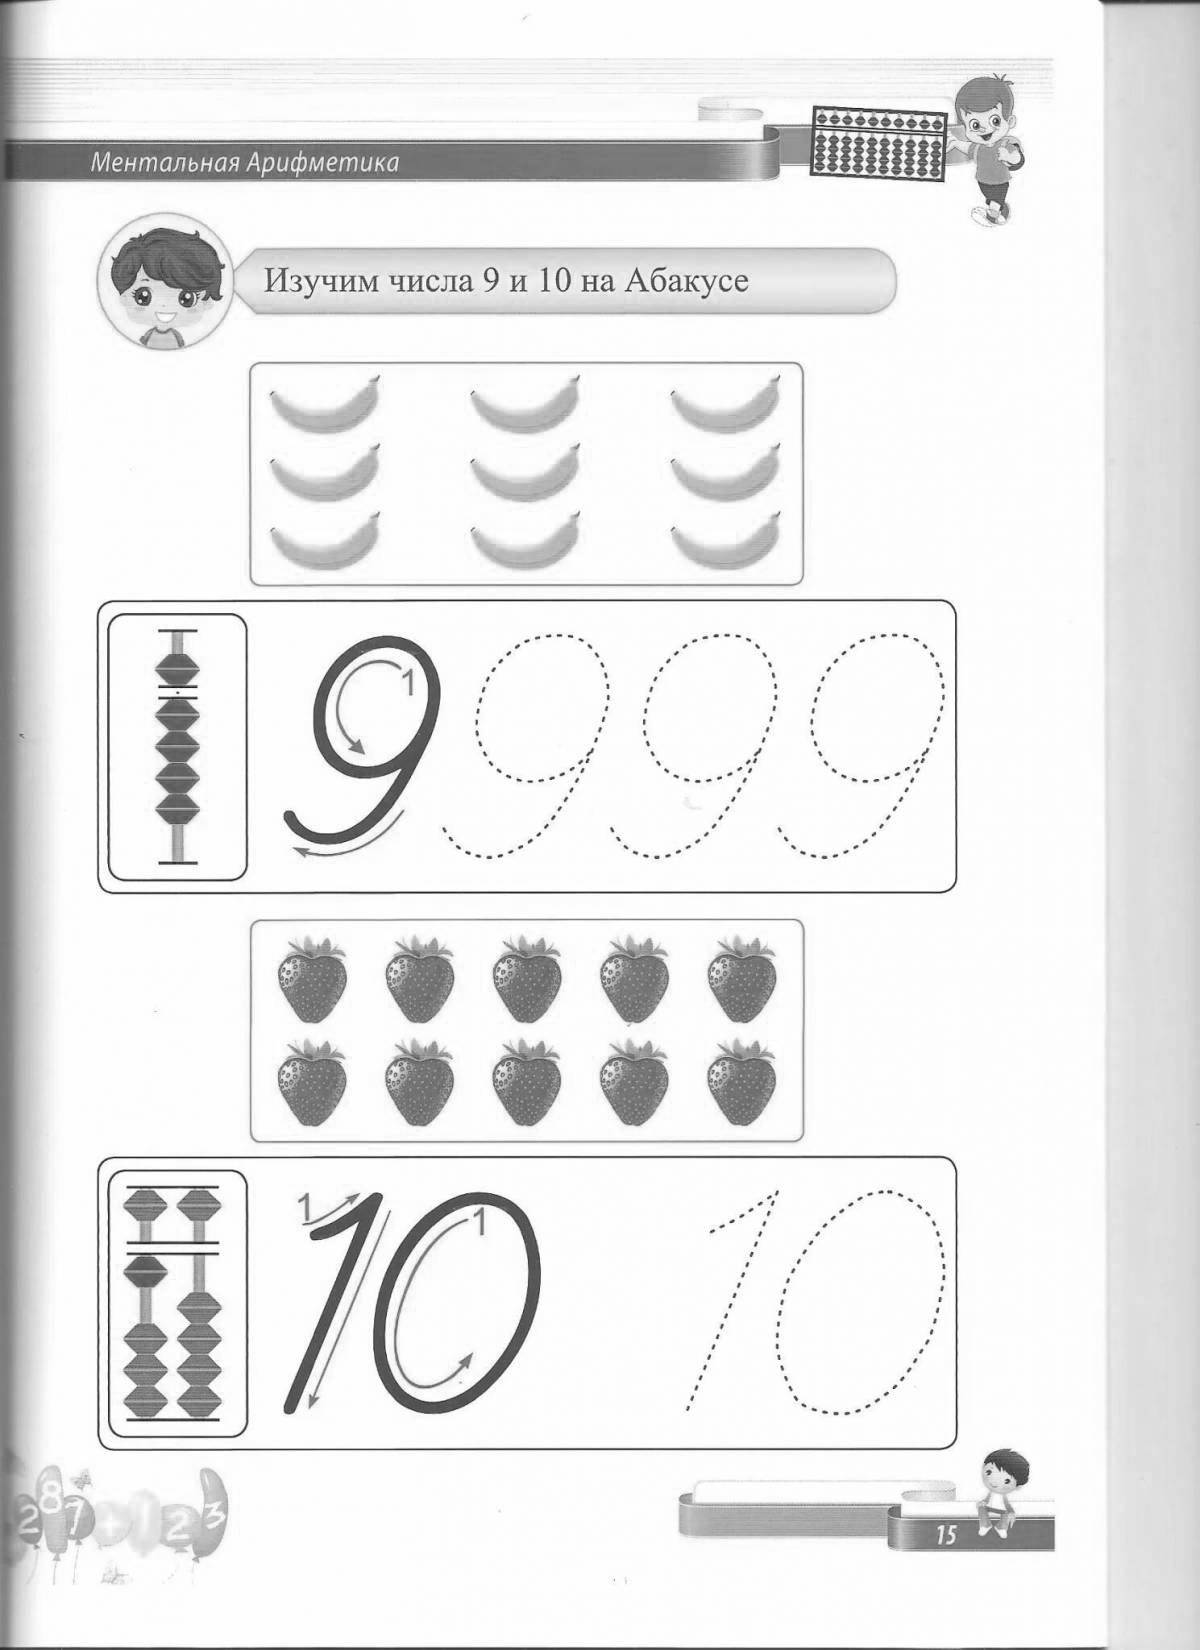 Mental arithmetic educational coloring book